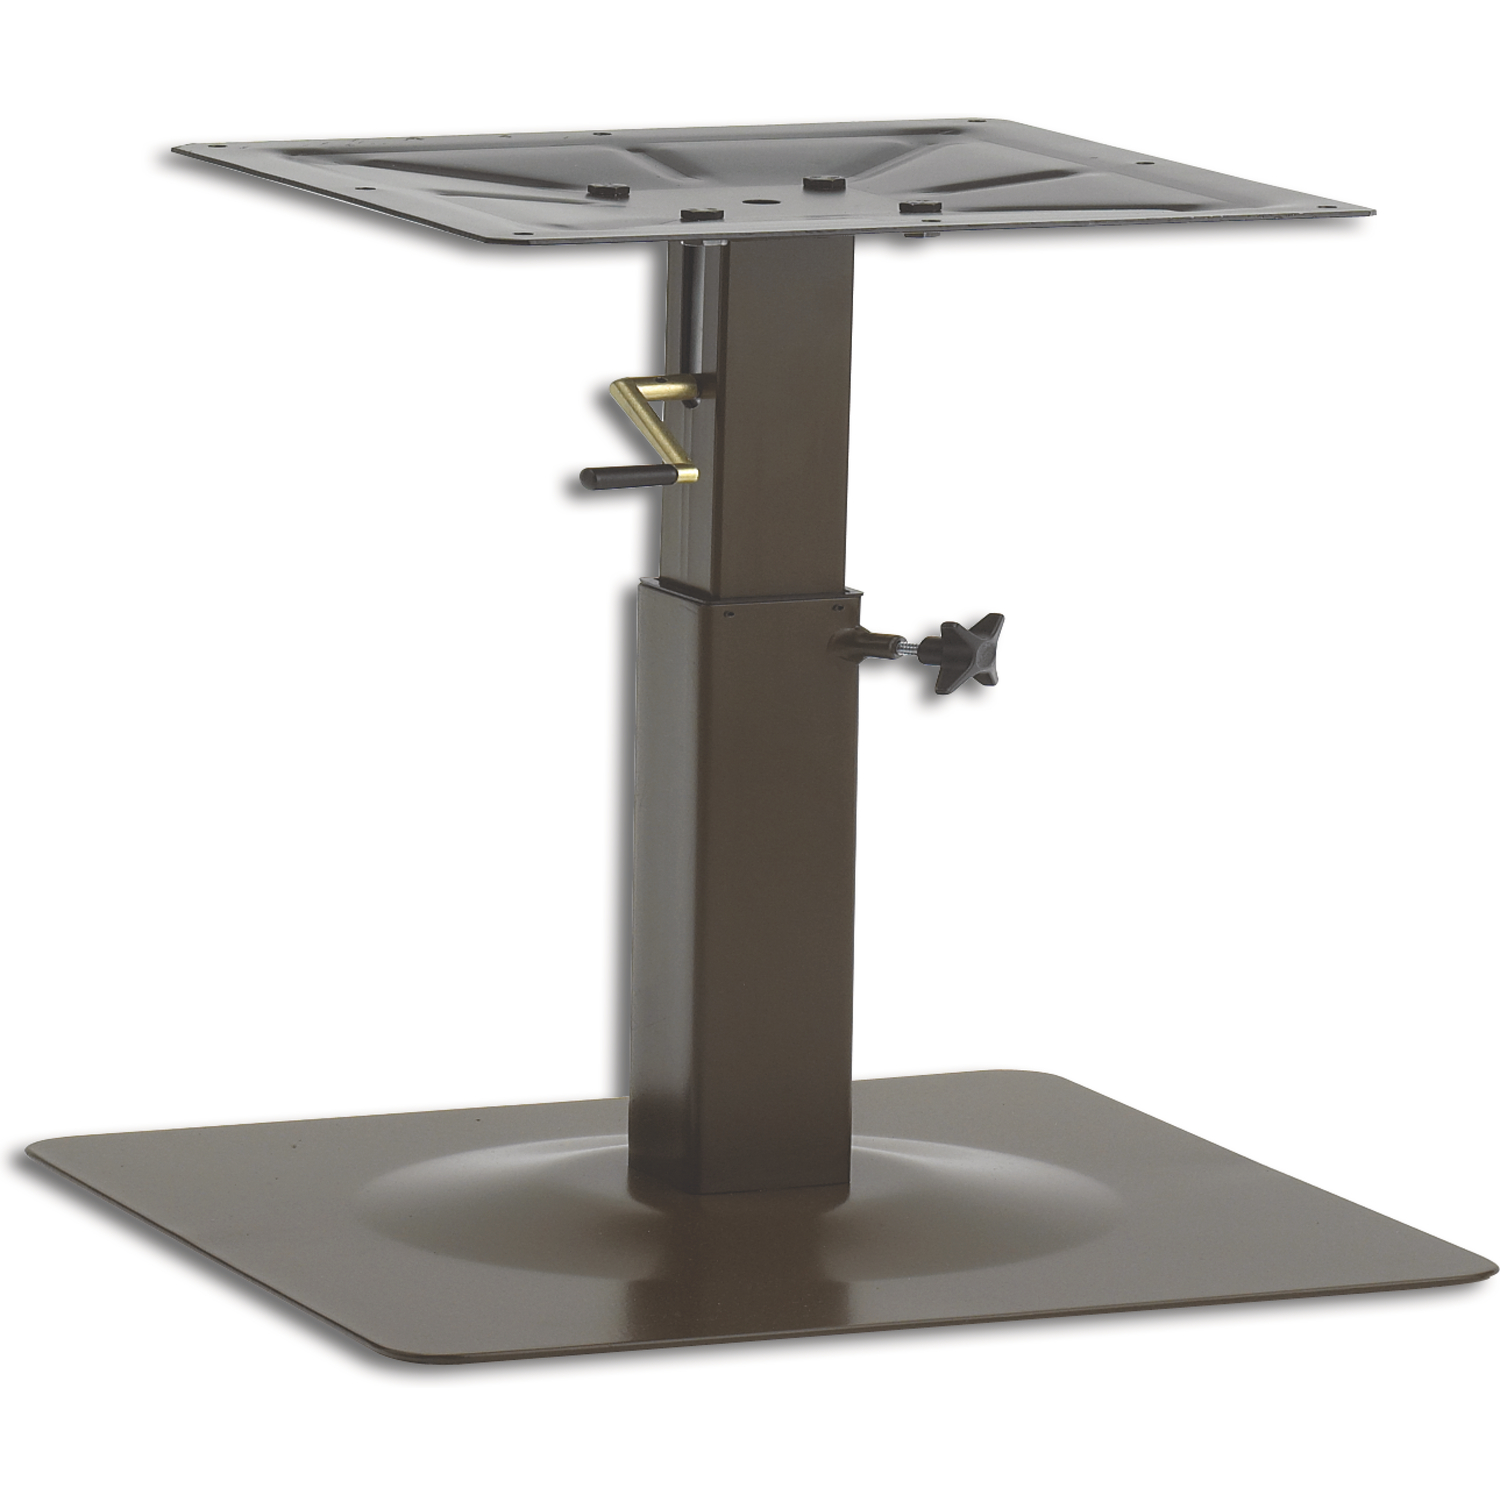 Base tavolo regolabile in altezza Basel - verniciato nero